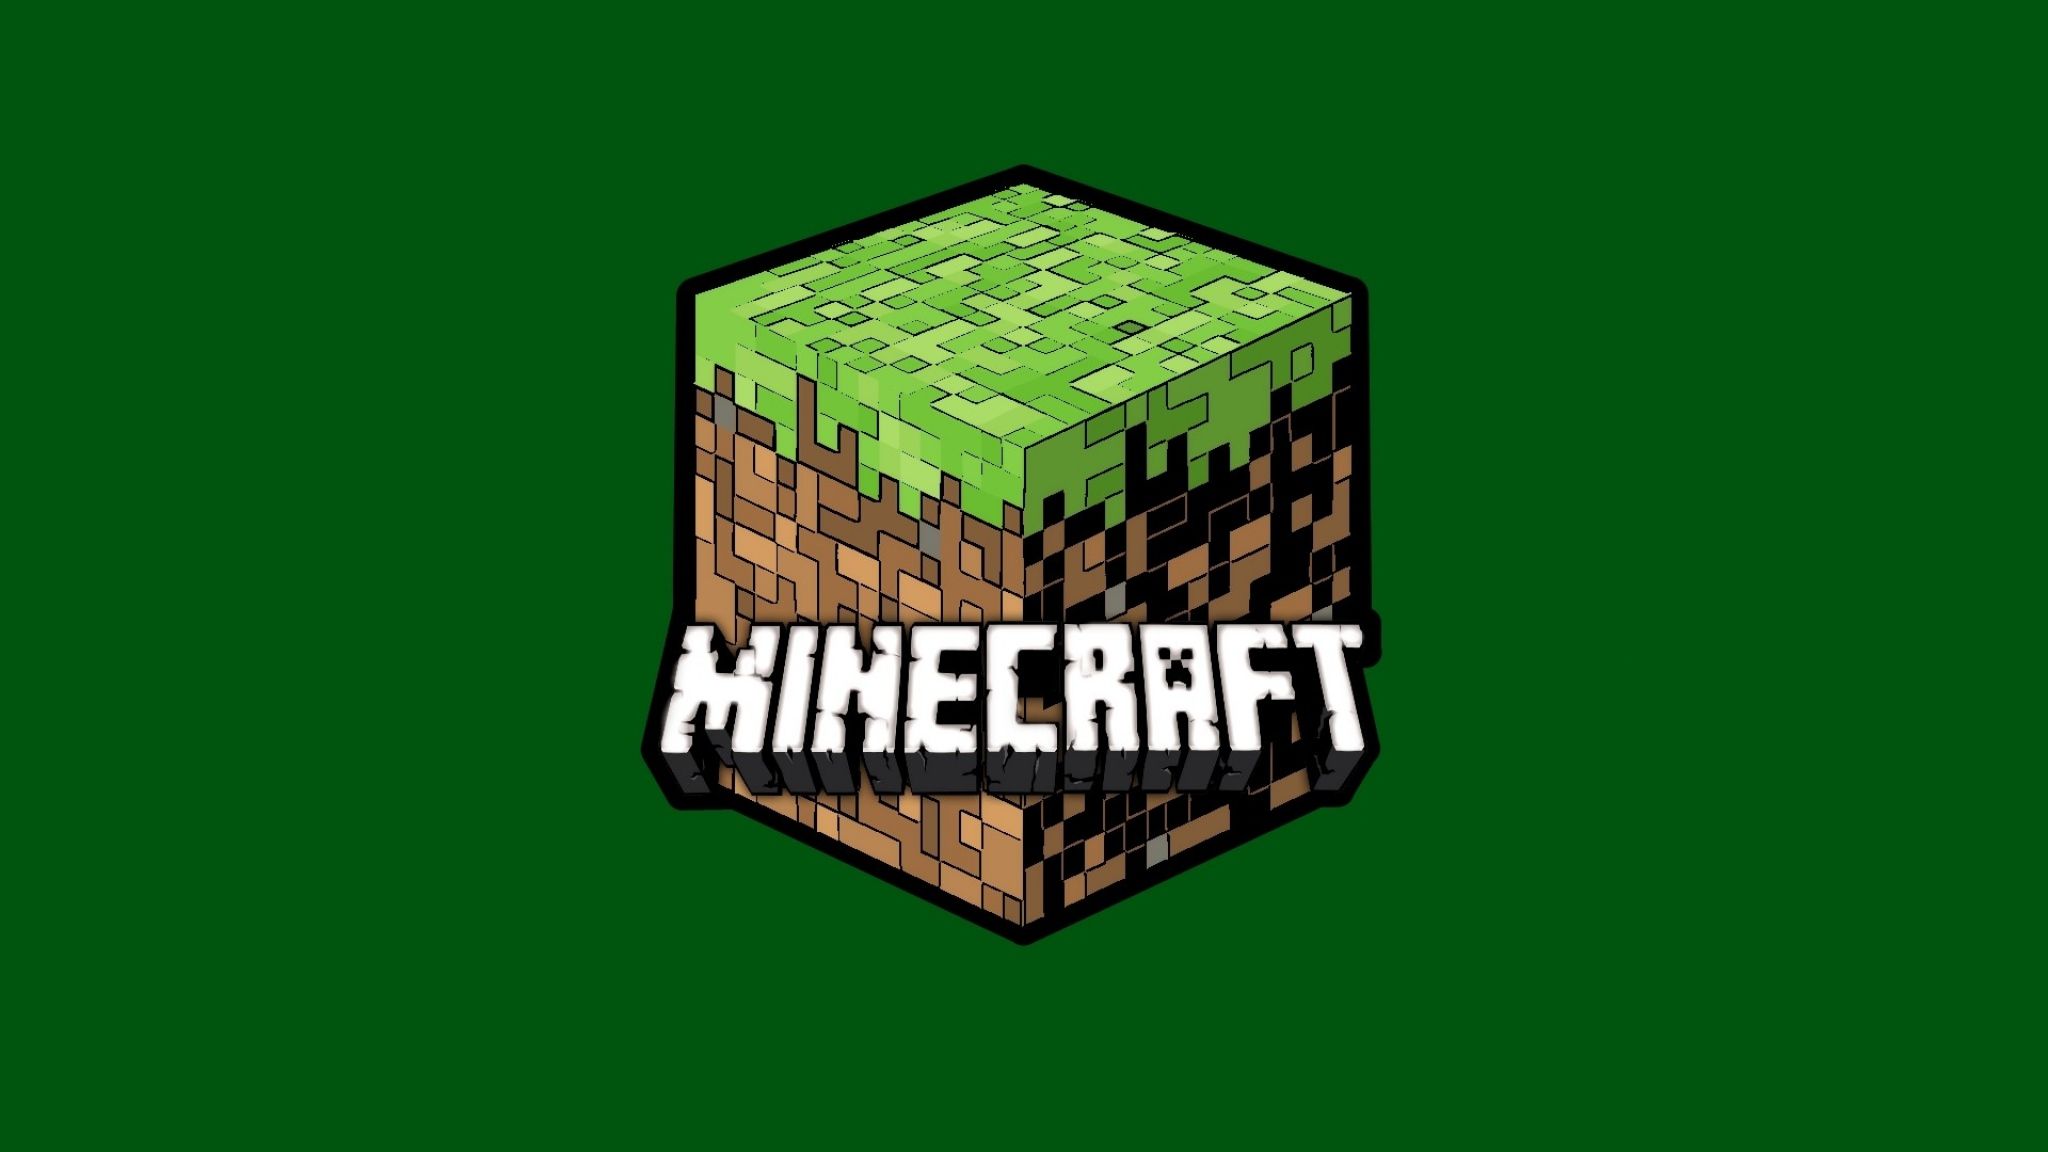 Hãy khám phá bộ sưu tập hình nền Minecraft độc đáo của chúng tôi! Với những hình ảnh tuyệt đẹp và phong cách đa dạng, bạn chắc chắn sẽ tìm thấy một bức ảnh Minecraft Wallpaper thích hợp để trang trí máy tính hoặc điện thoại của mình.